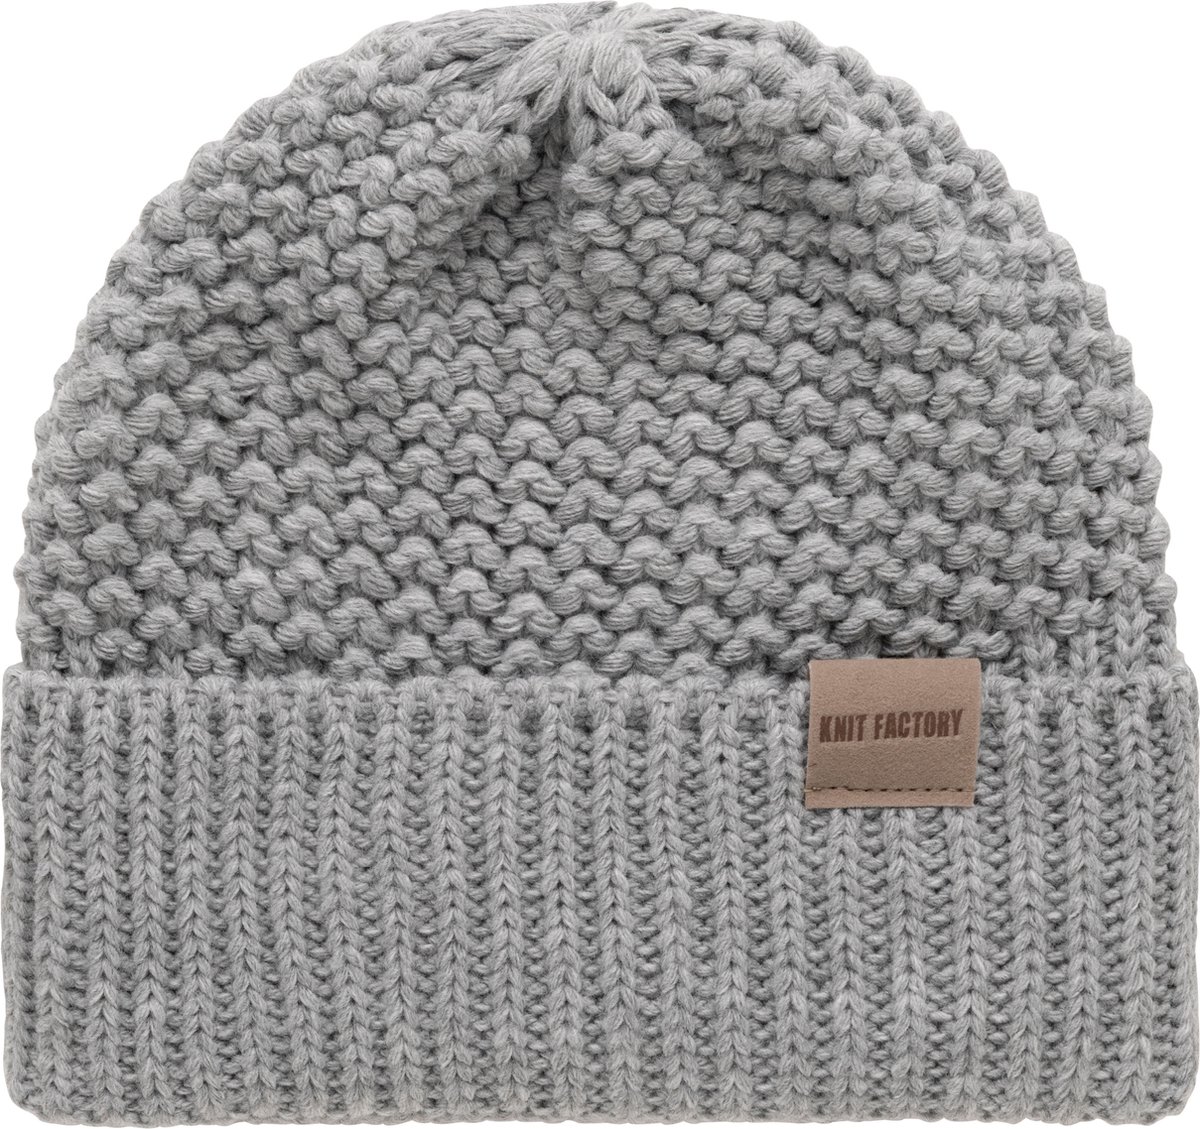 Knit Factory Carry Gebreide Muts Heren & Dames - Beanie hat - Licht Grijs - Grofgebreid - Warme lichtgrijze Wintermuts - Unisex - One Size